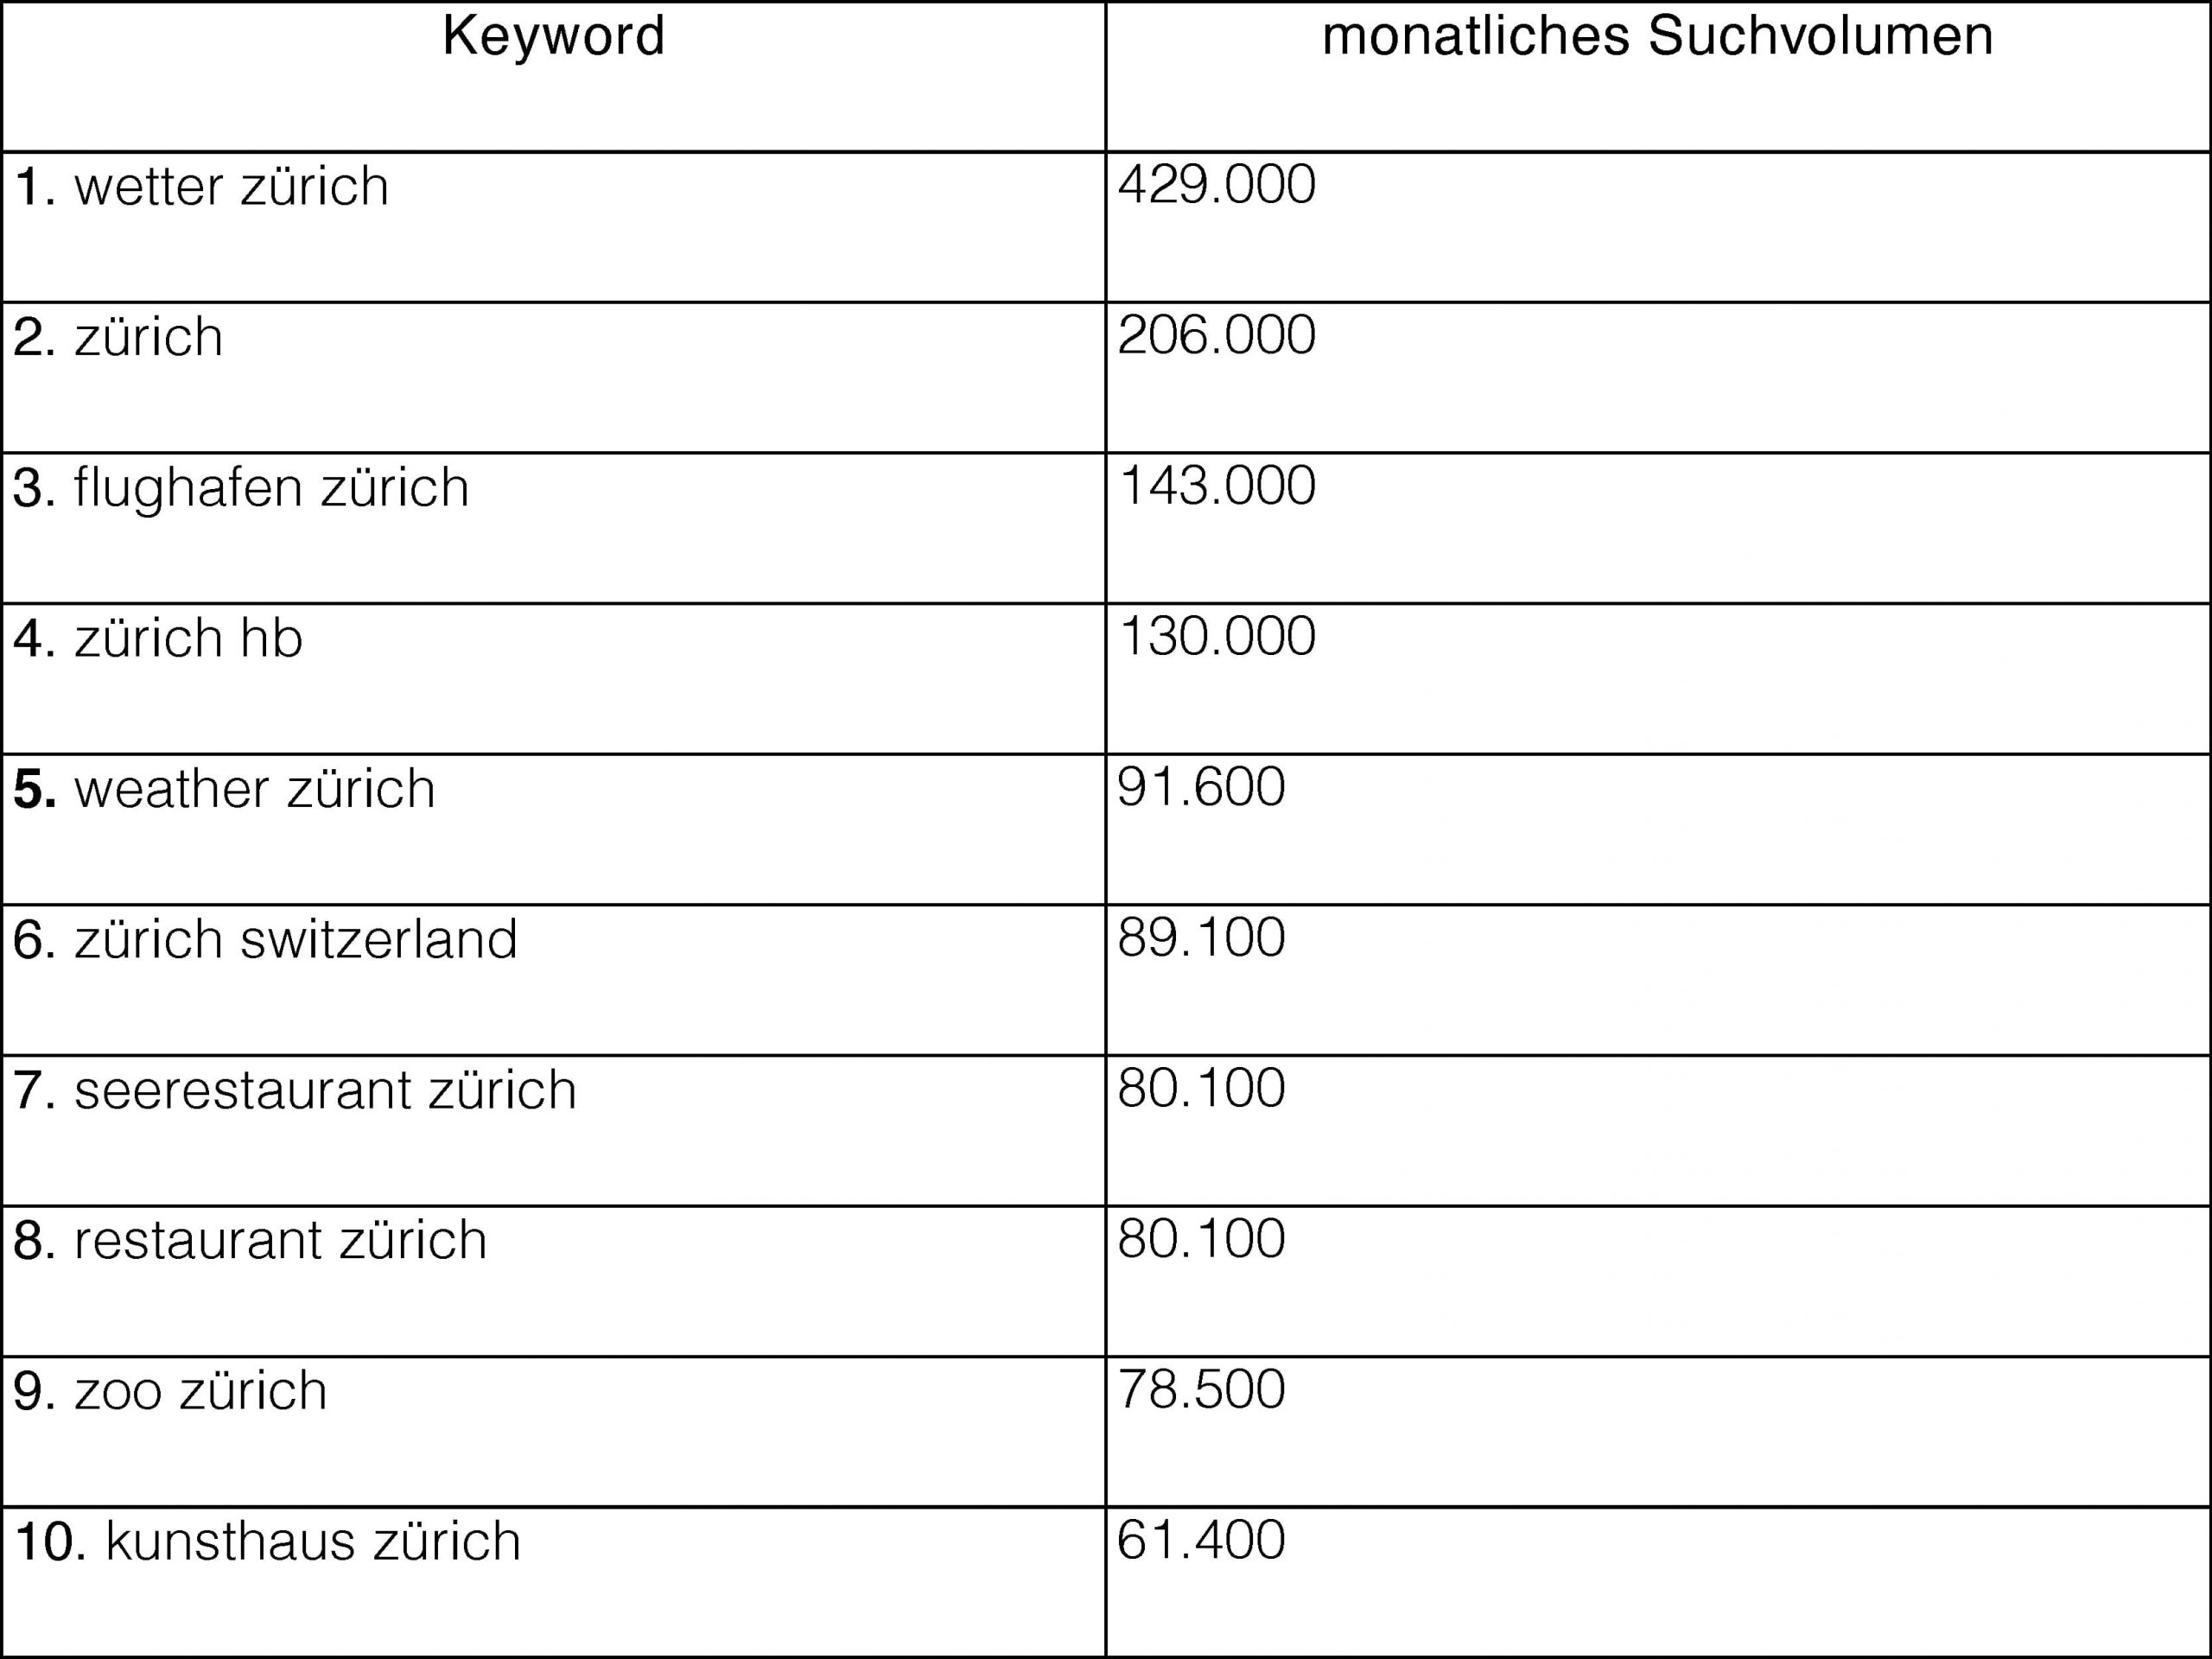 Top 10 Keywords Zürich 2023